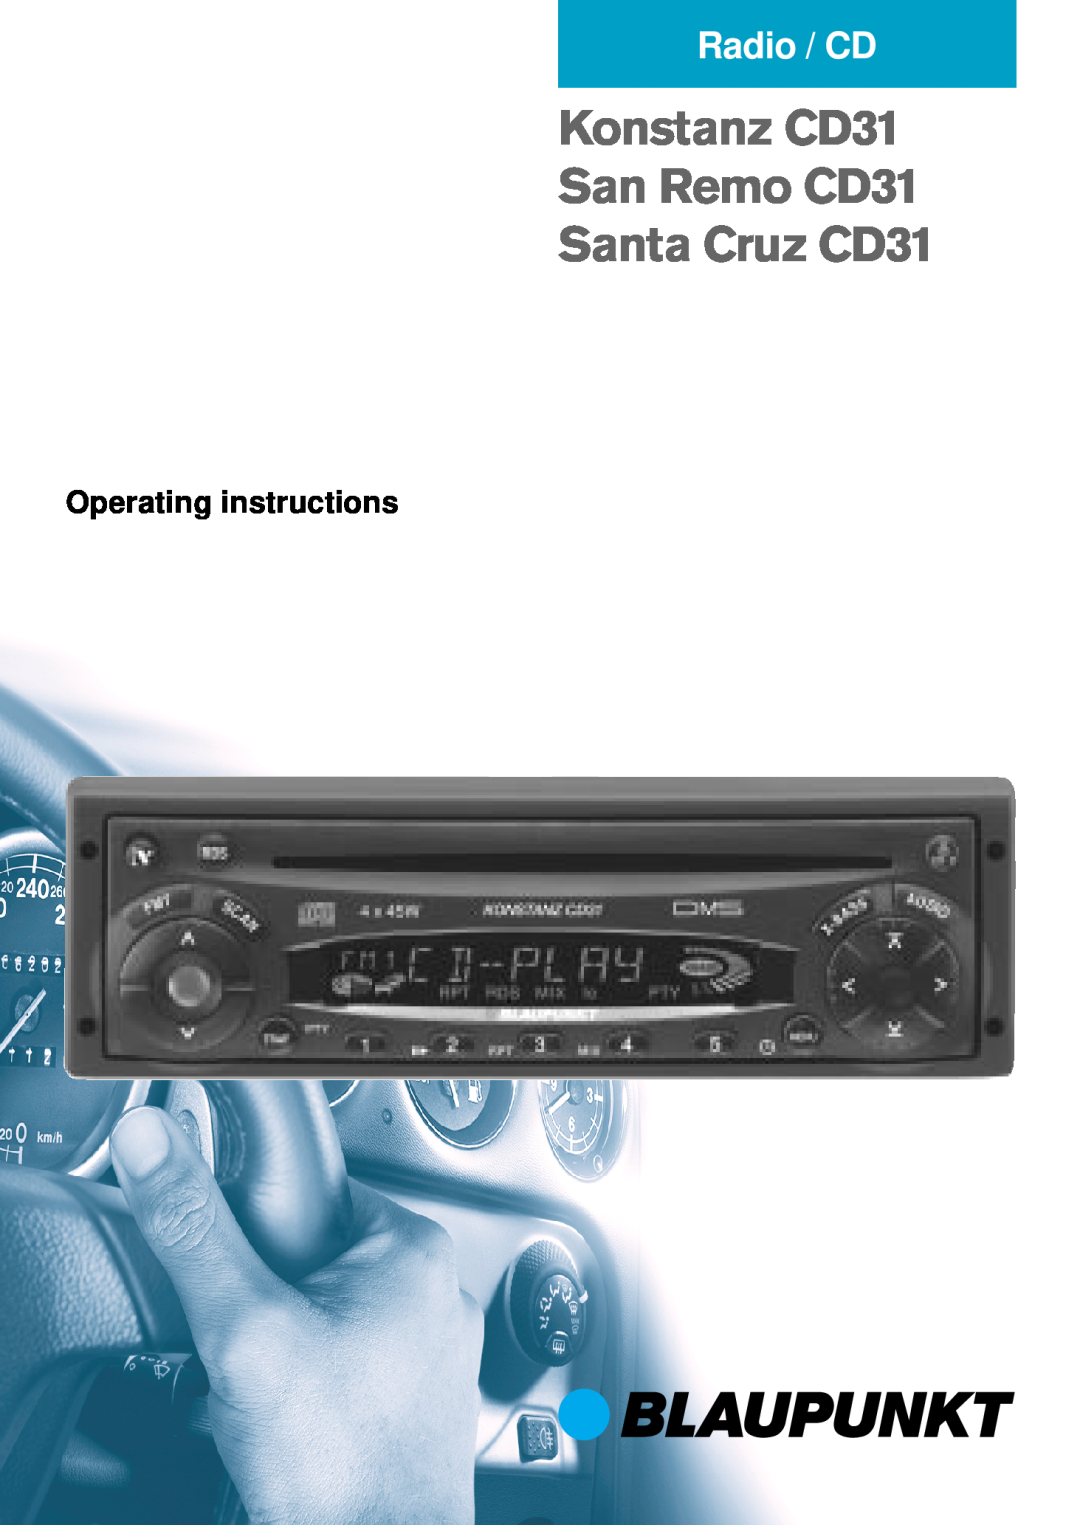 Blaupunkt operating instructions Konstanz CD31 San Remo CD31 Santa Cruz CD31, Radio / CD, Operating instructions 